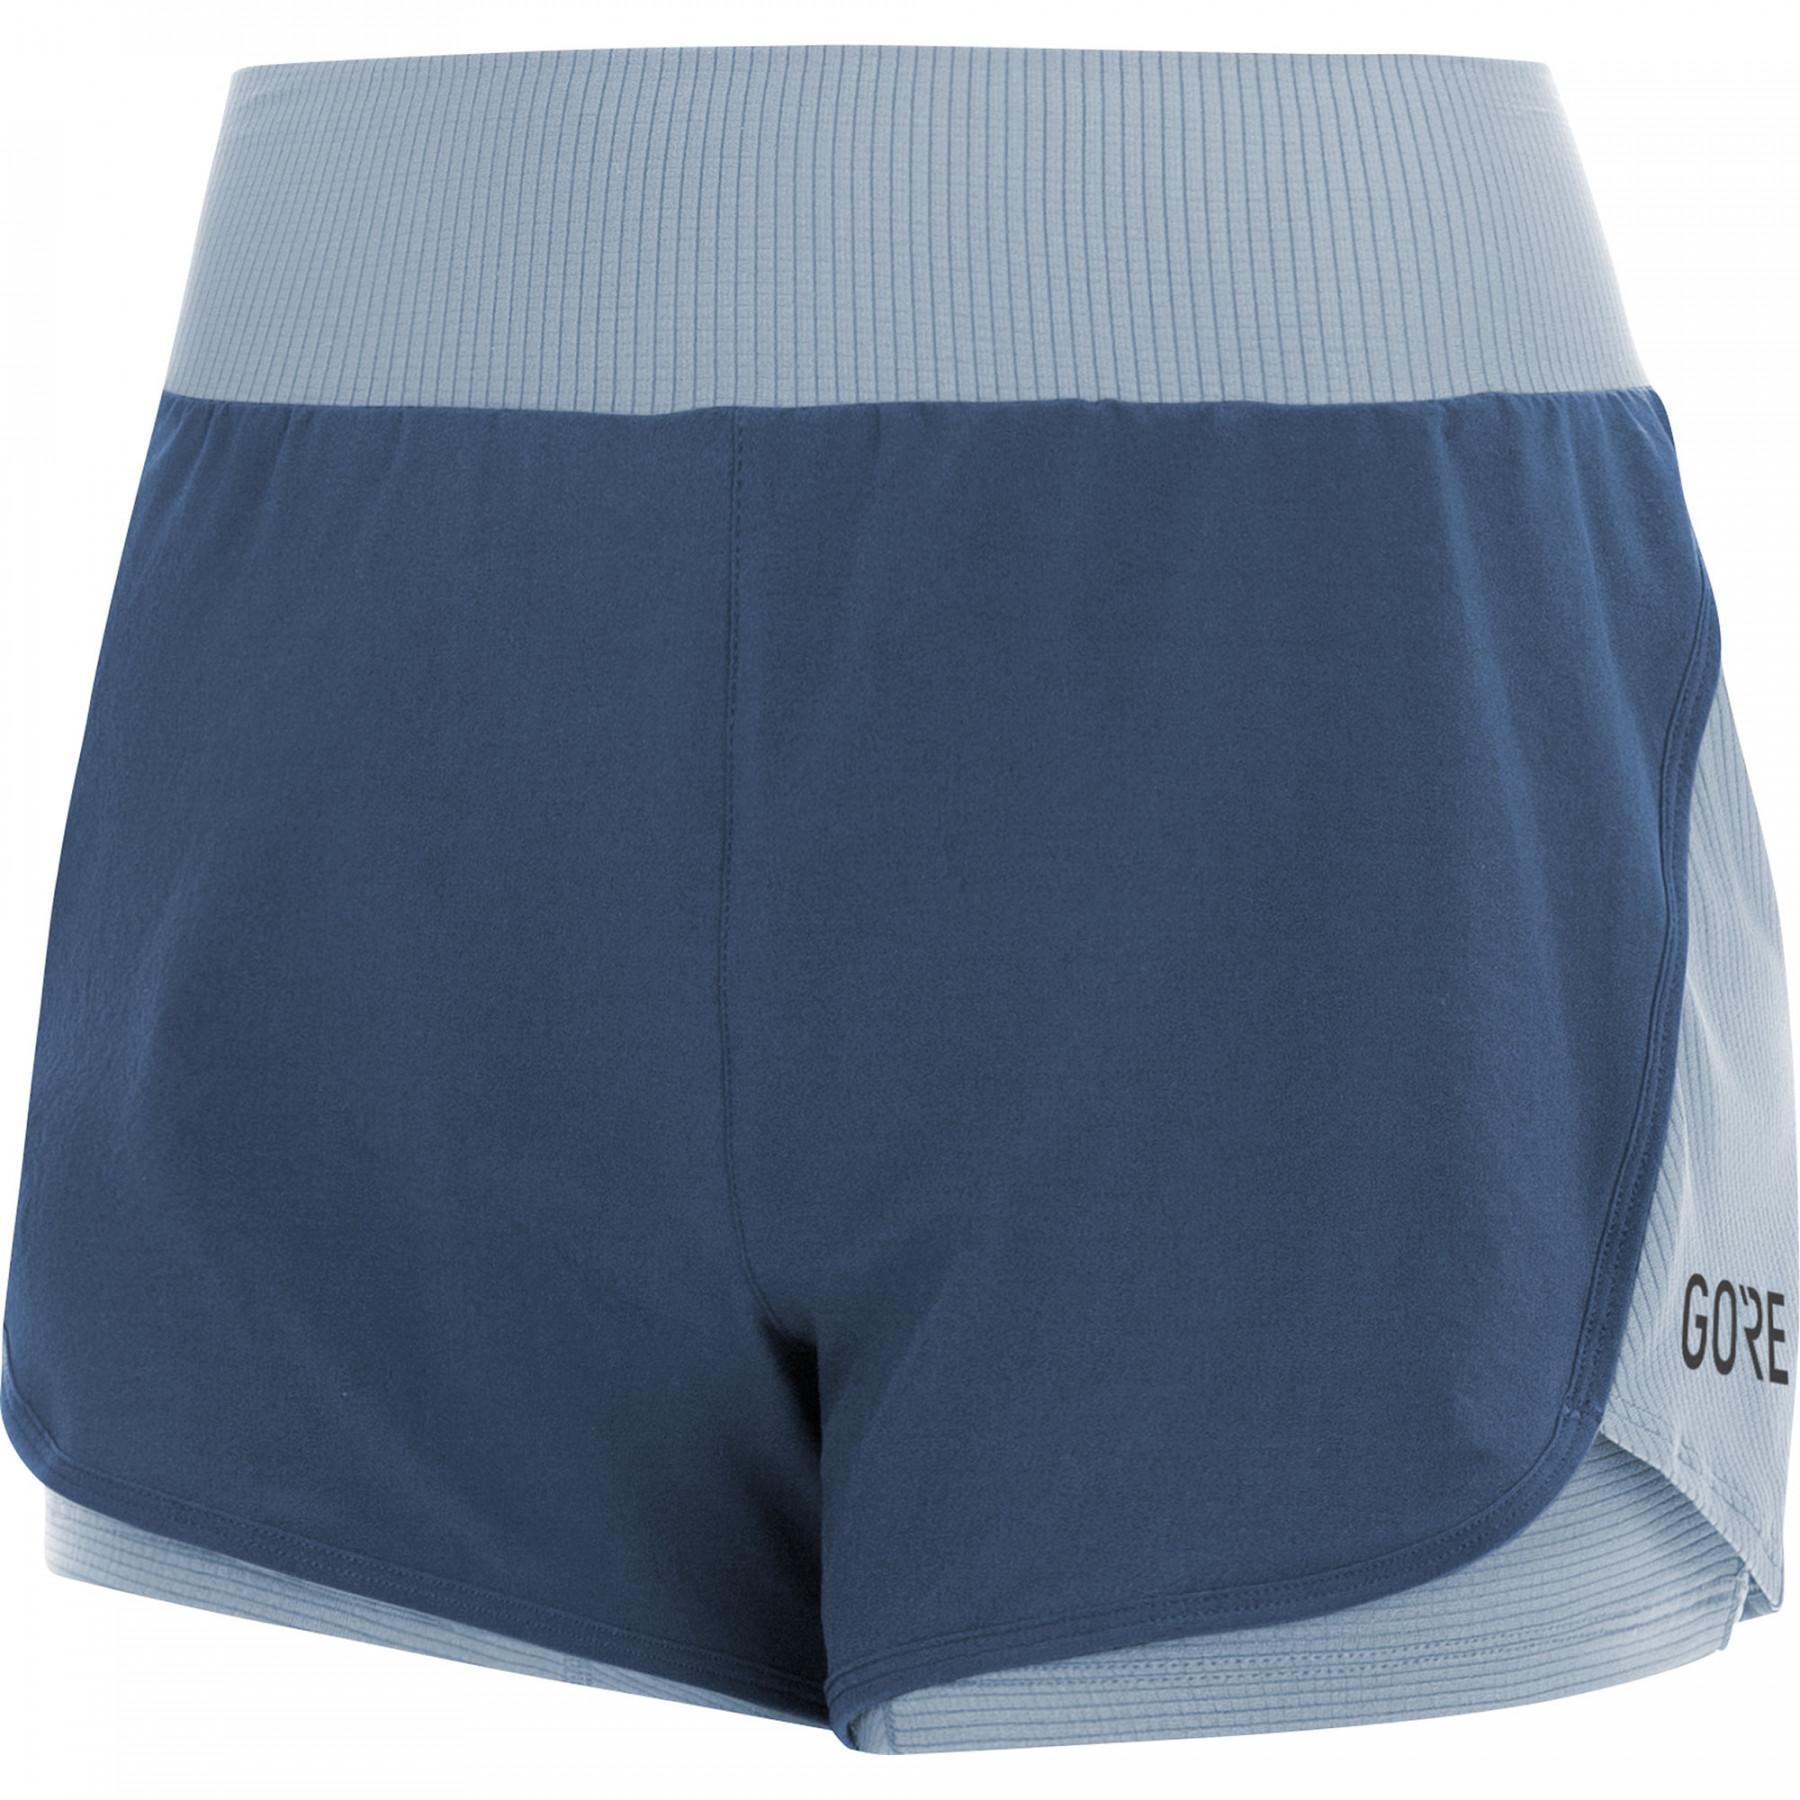 Pantalones cortos de mujer Gore R7 2in1